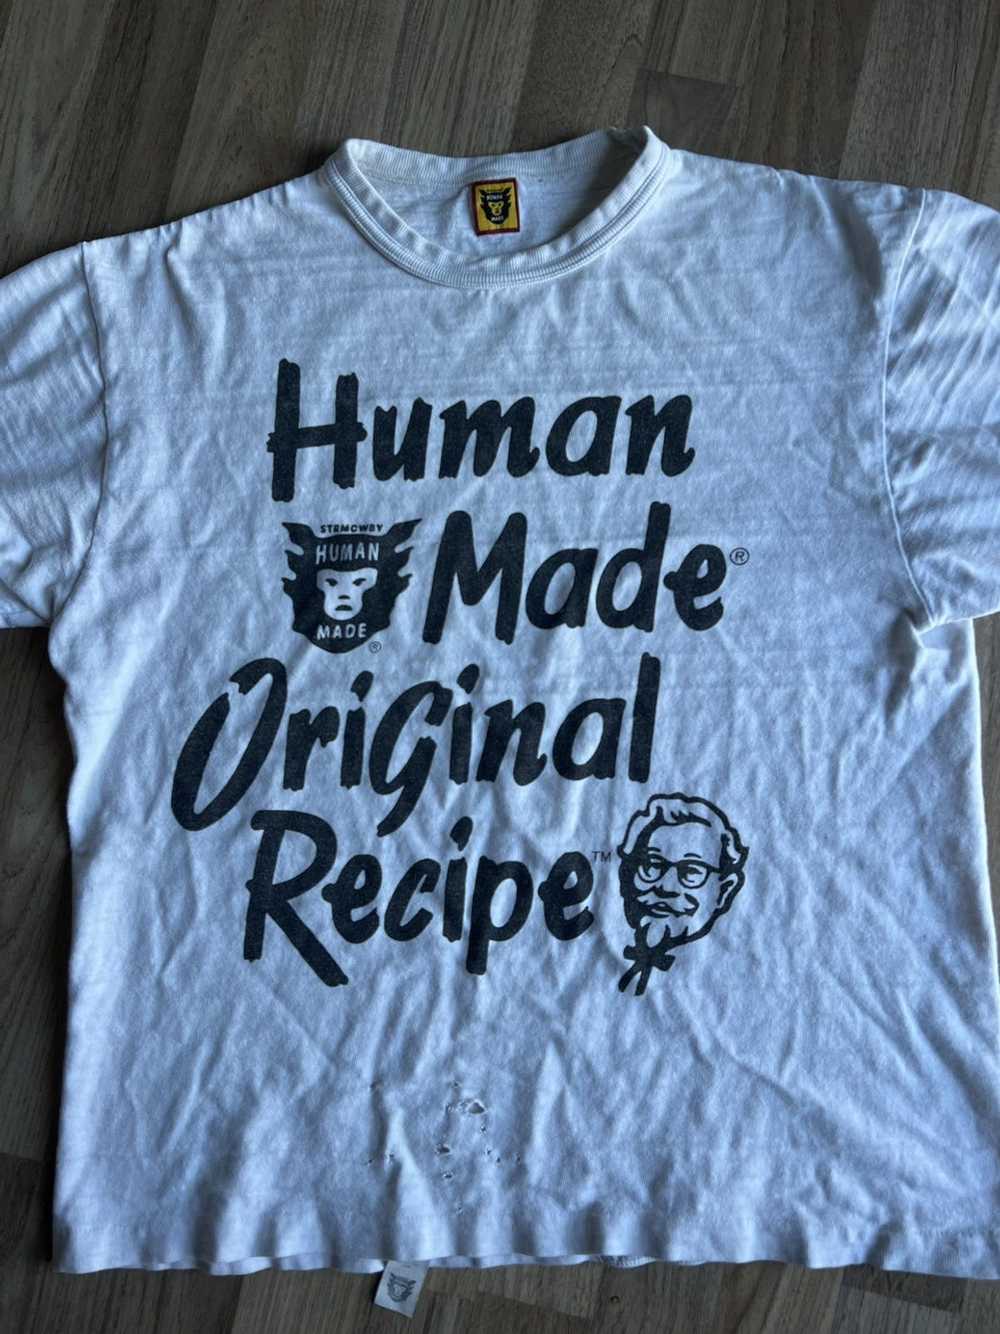 Human Made × Nigo Human made x KFC original recipe - image 2